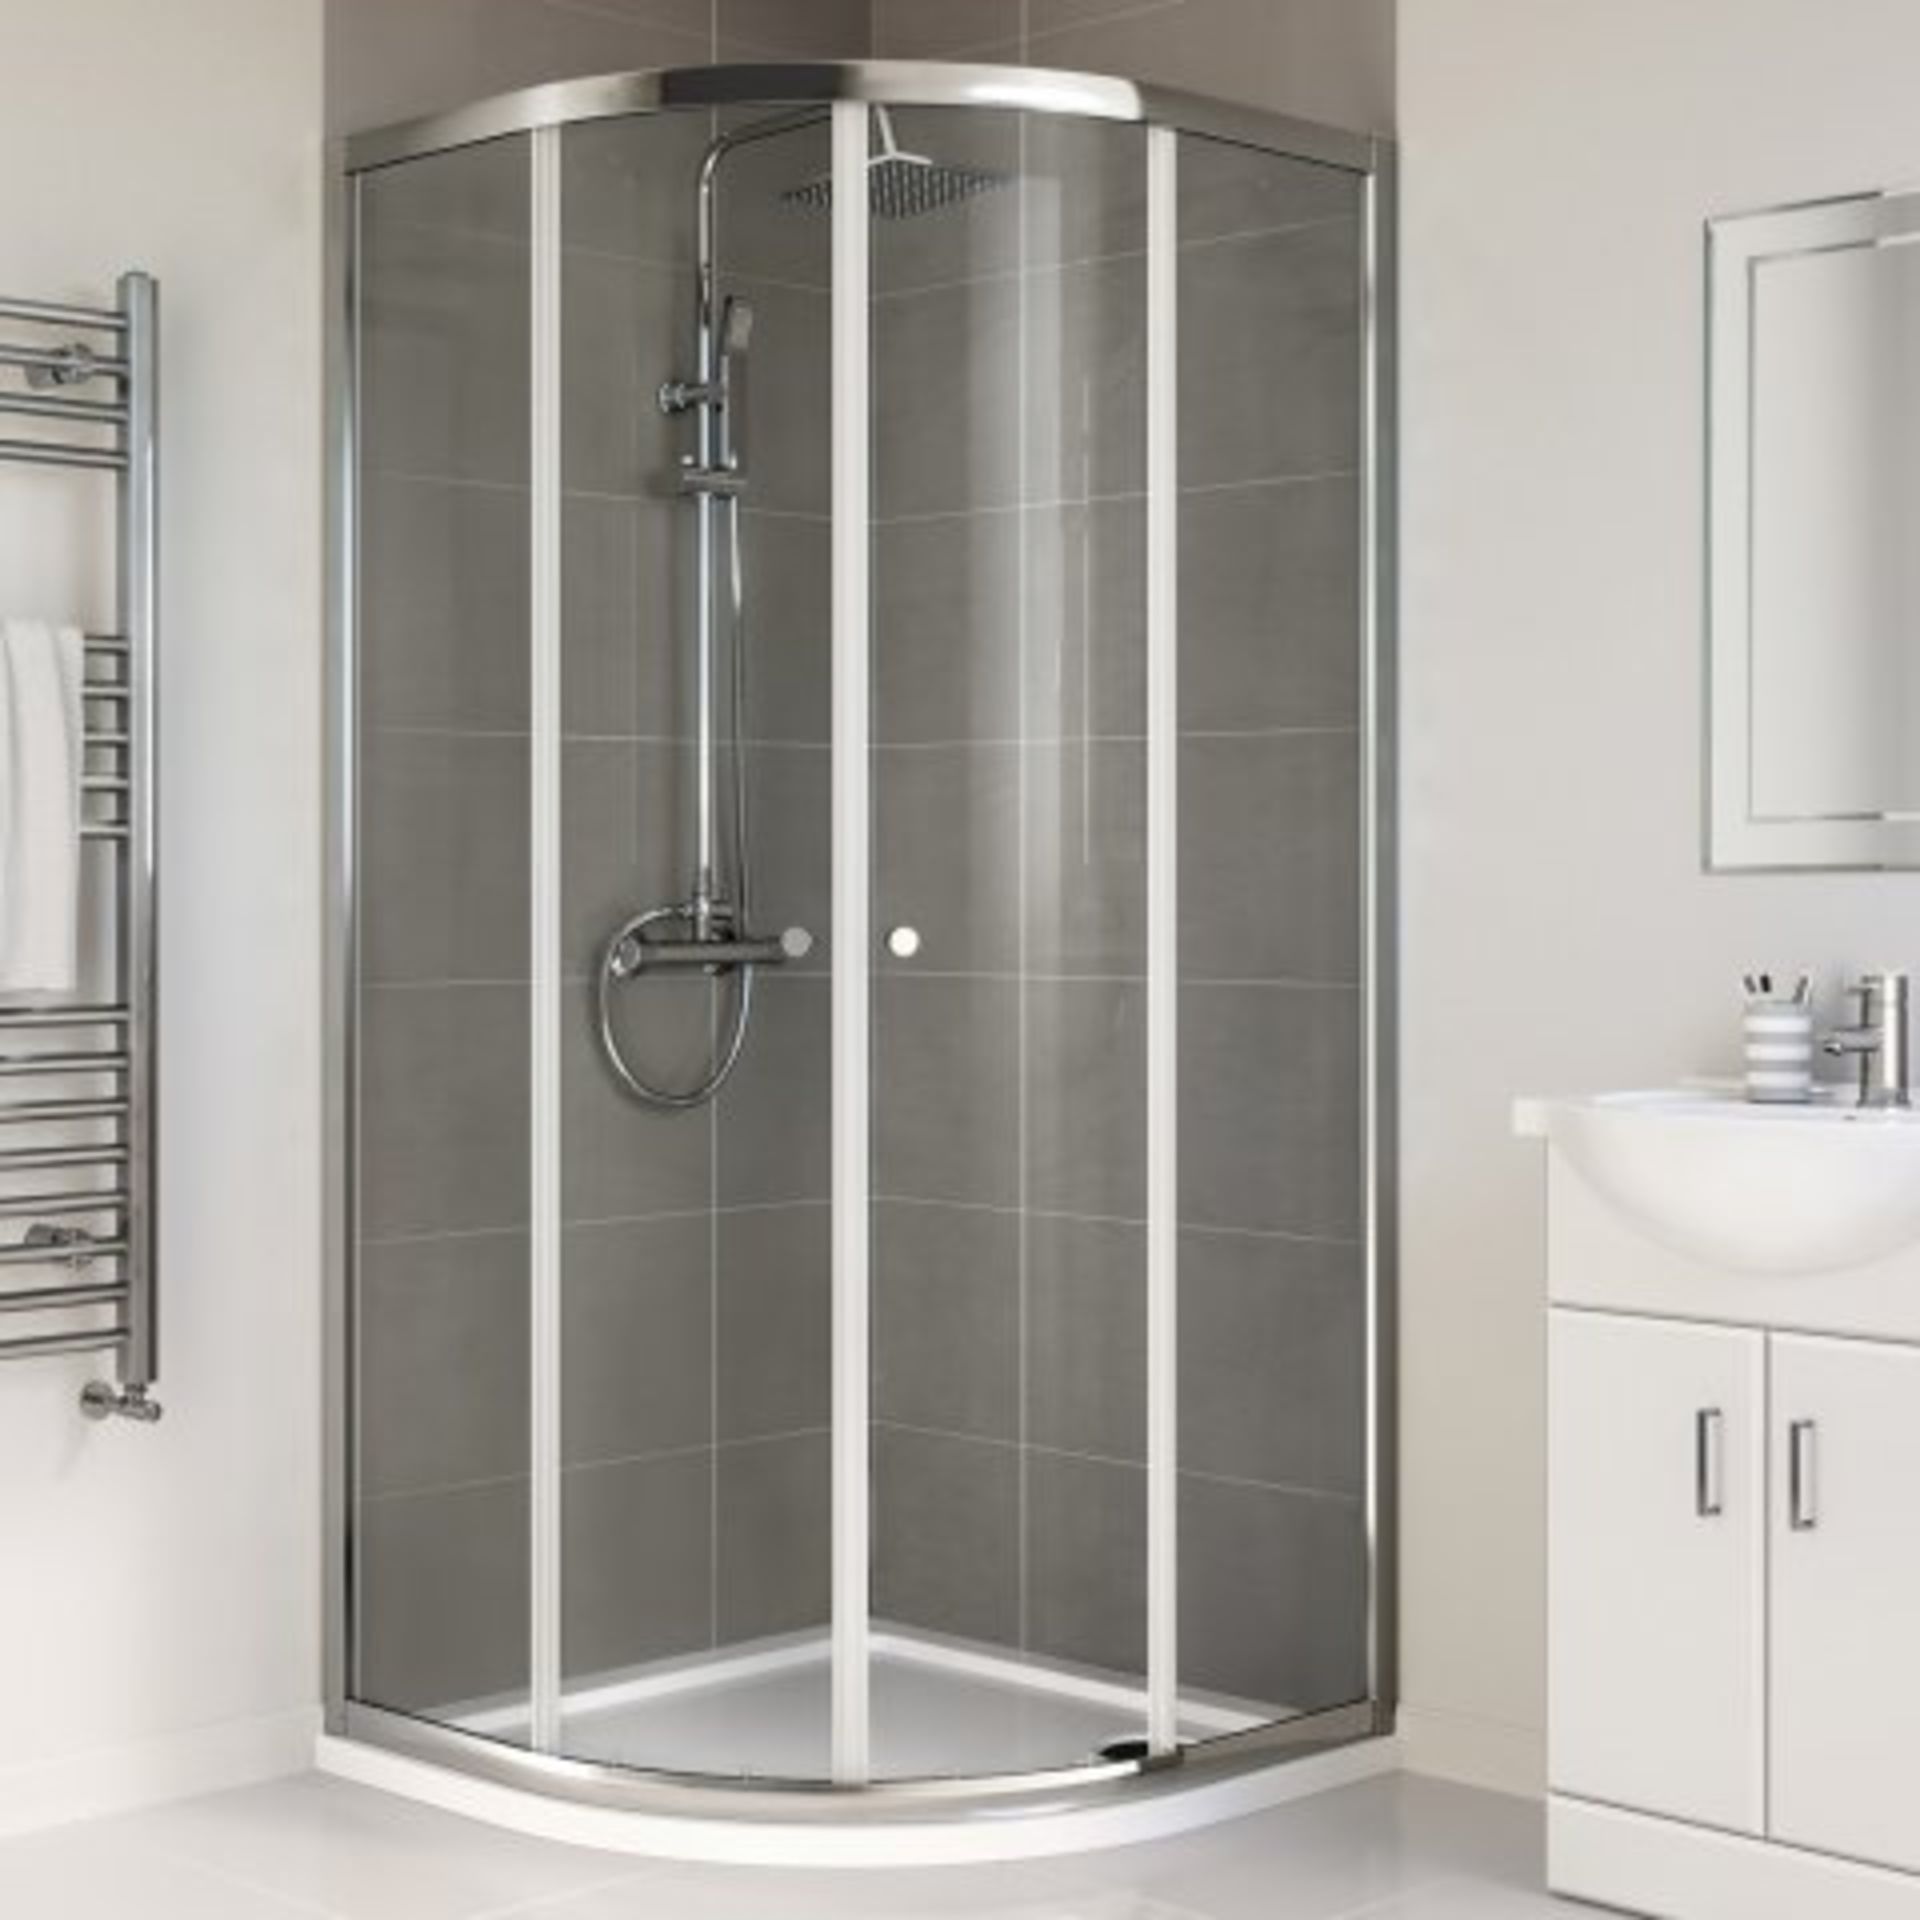 (J177) 800x800mm - Elements Quadrant Shower Enclosure. RRP £199.99. Budget Solution Our entry